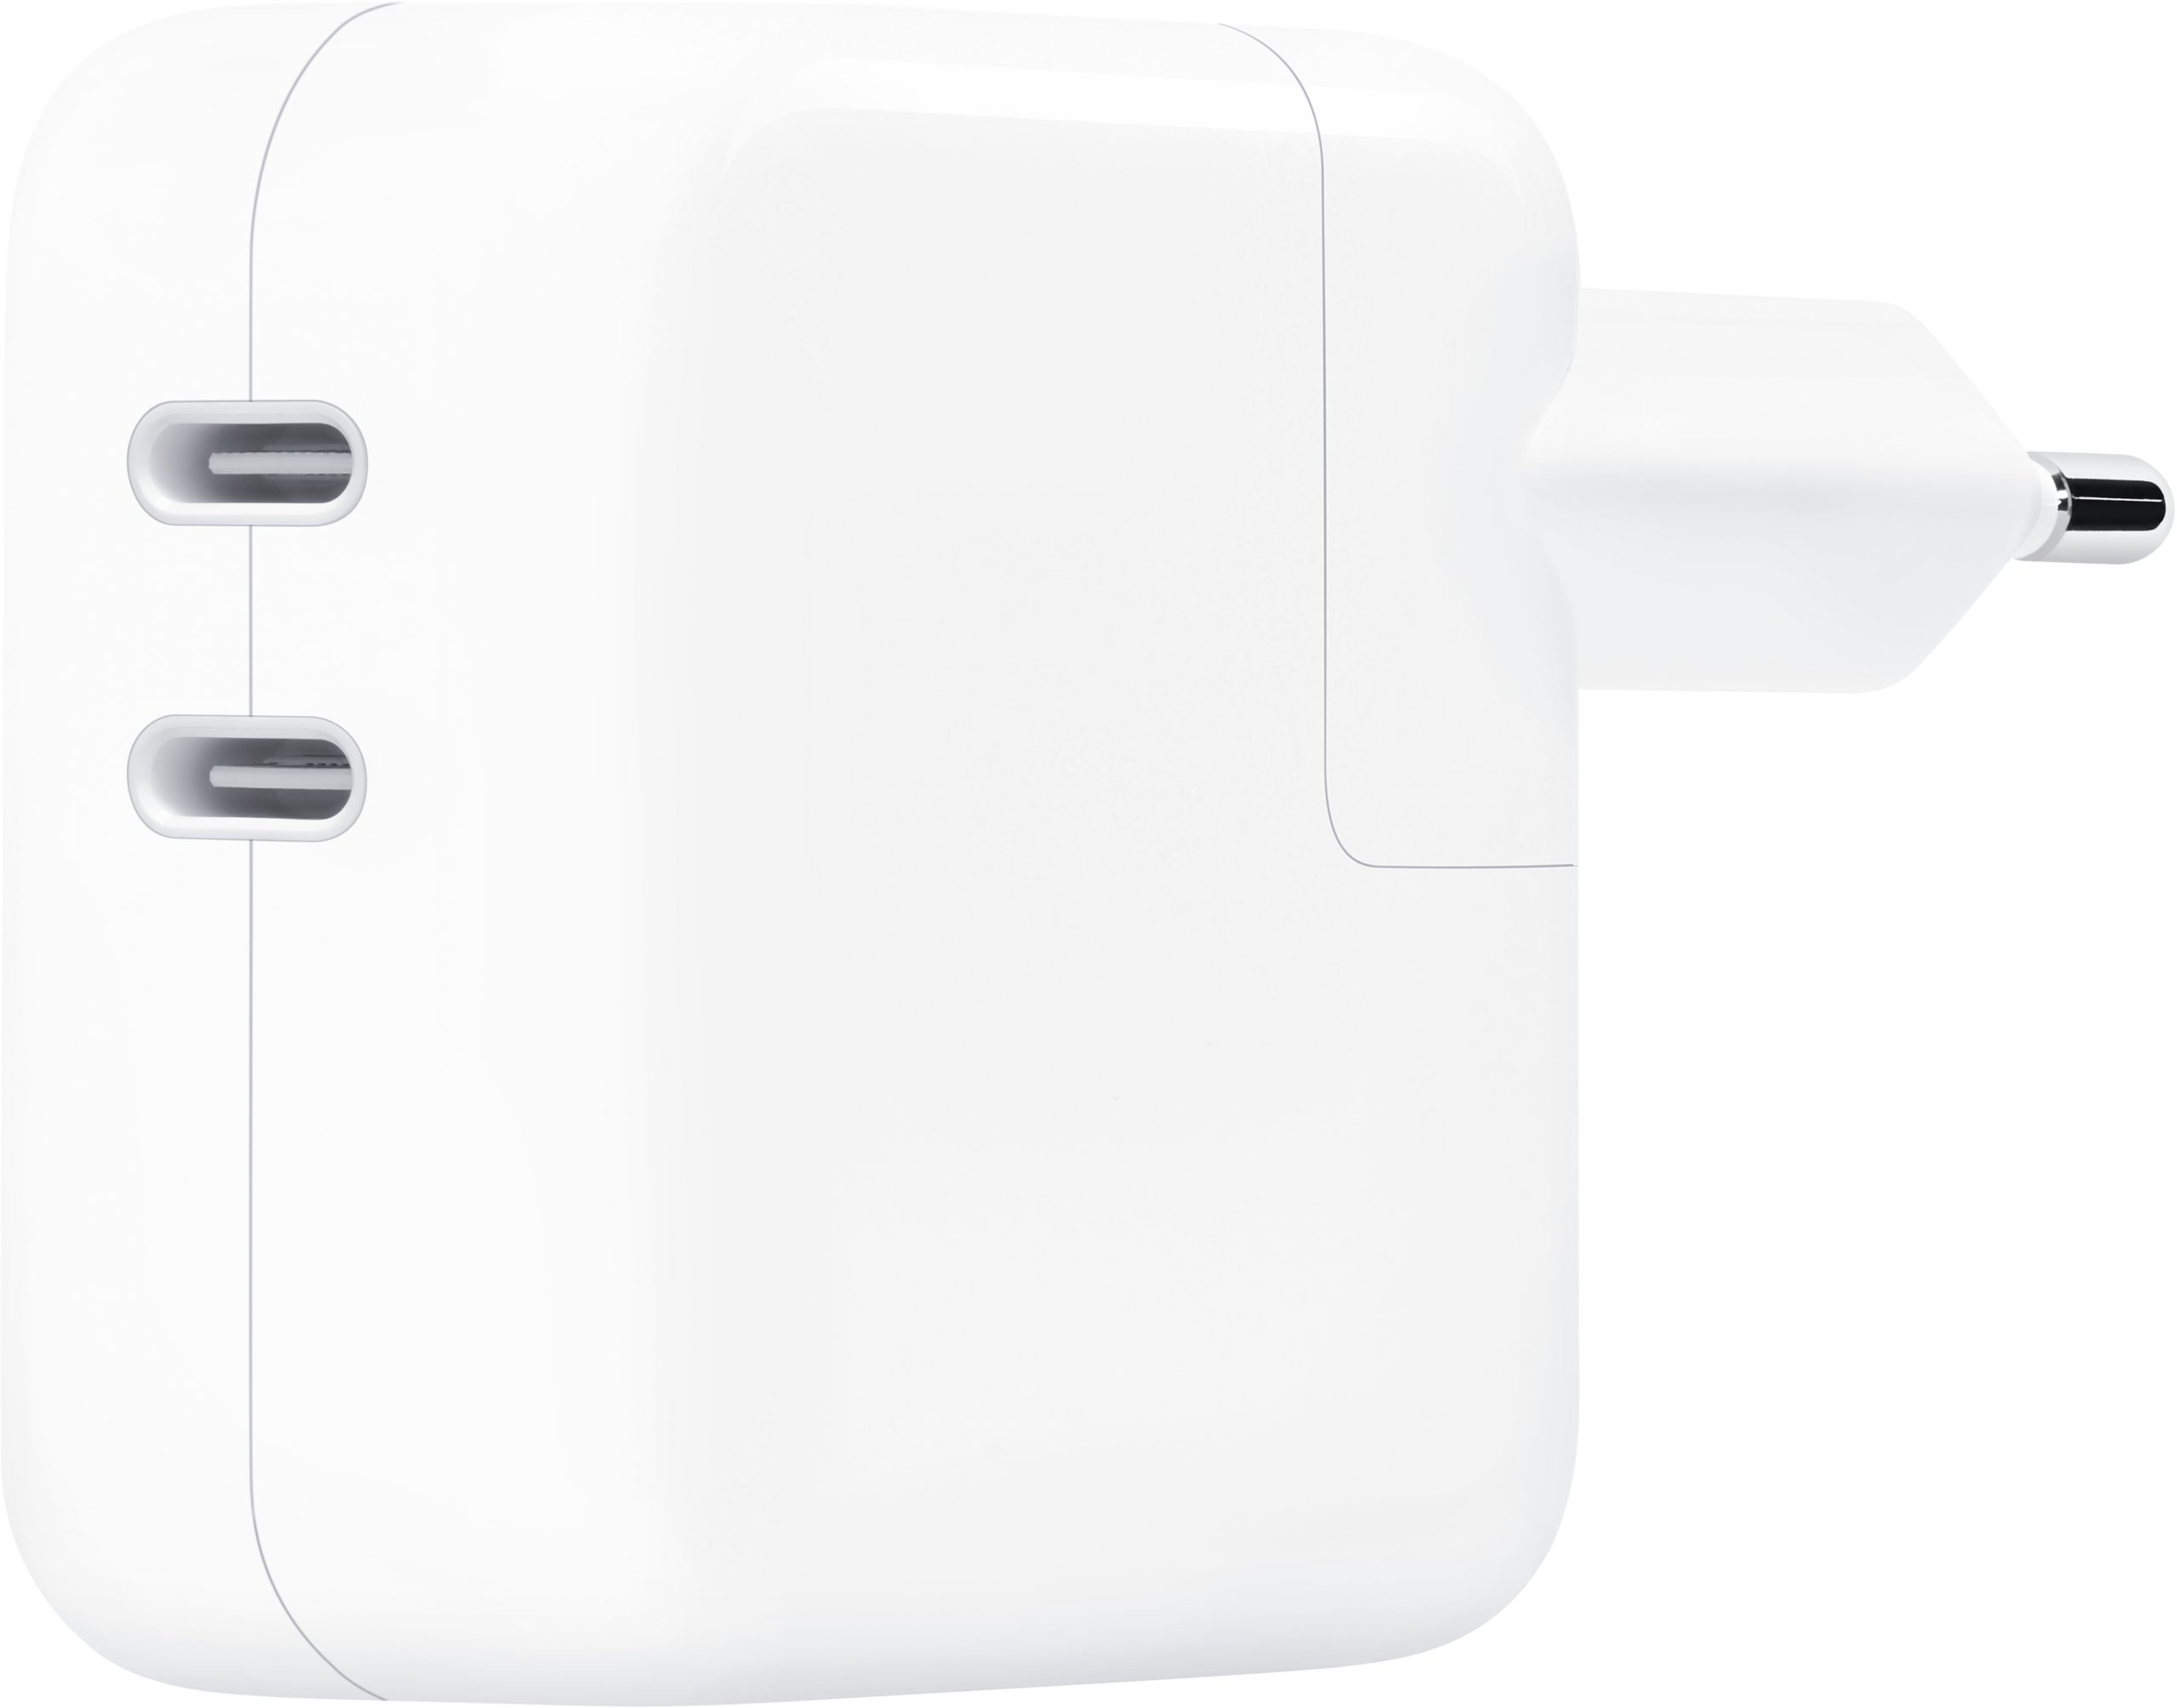 Accessoires Apple MacBook - Protections, chargeurs et plus sur Gsm55